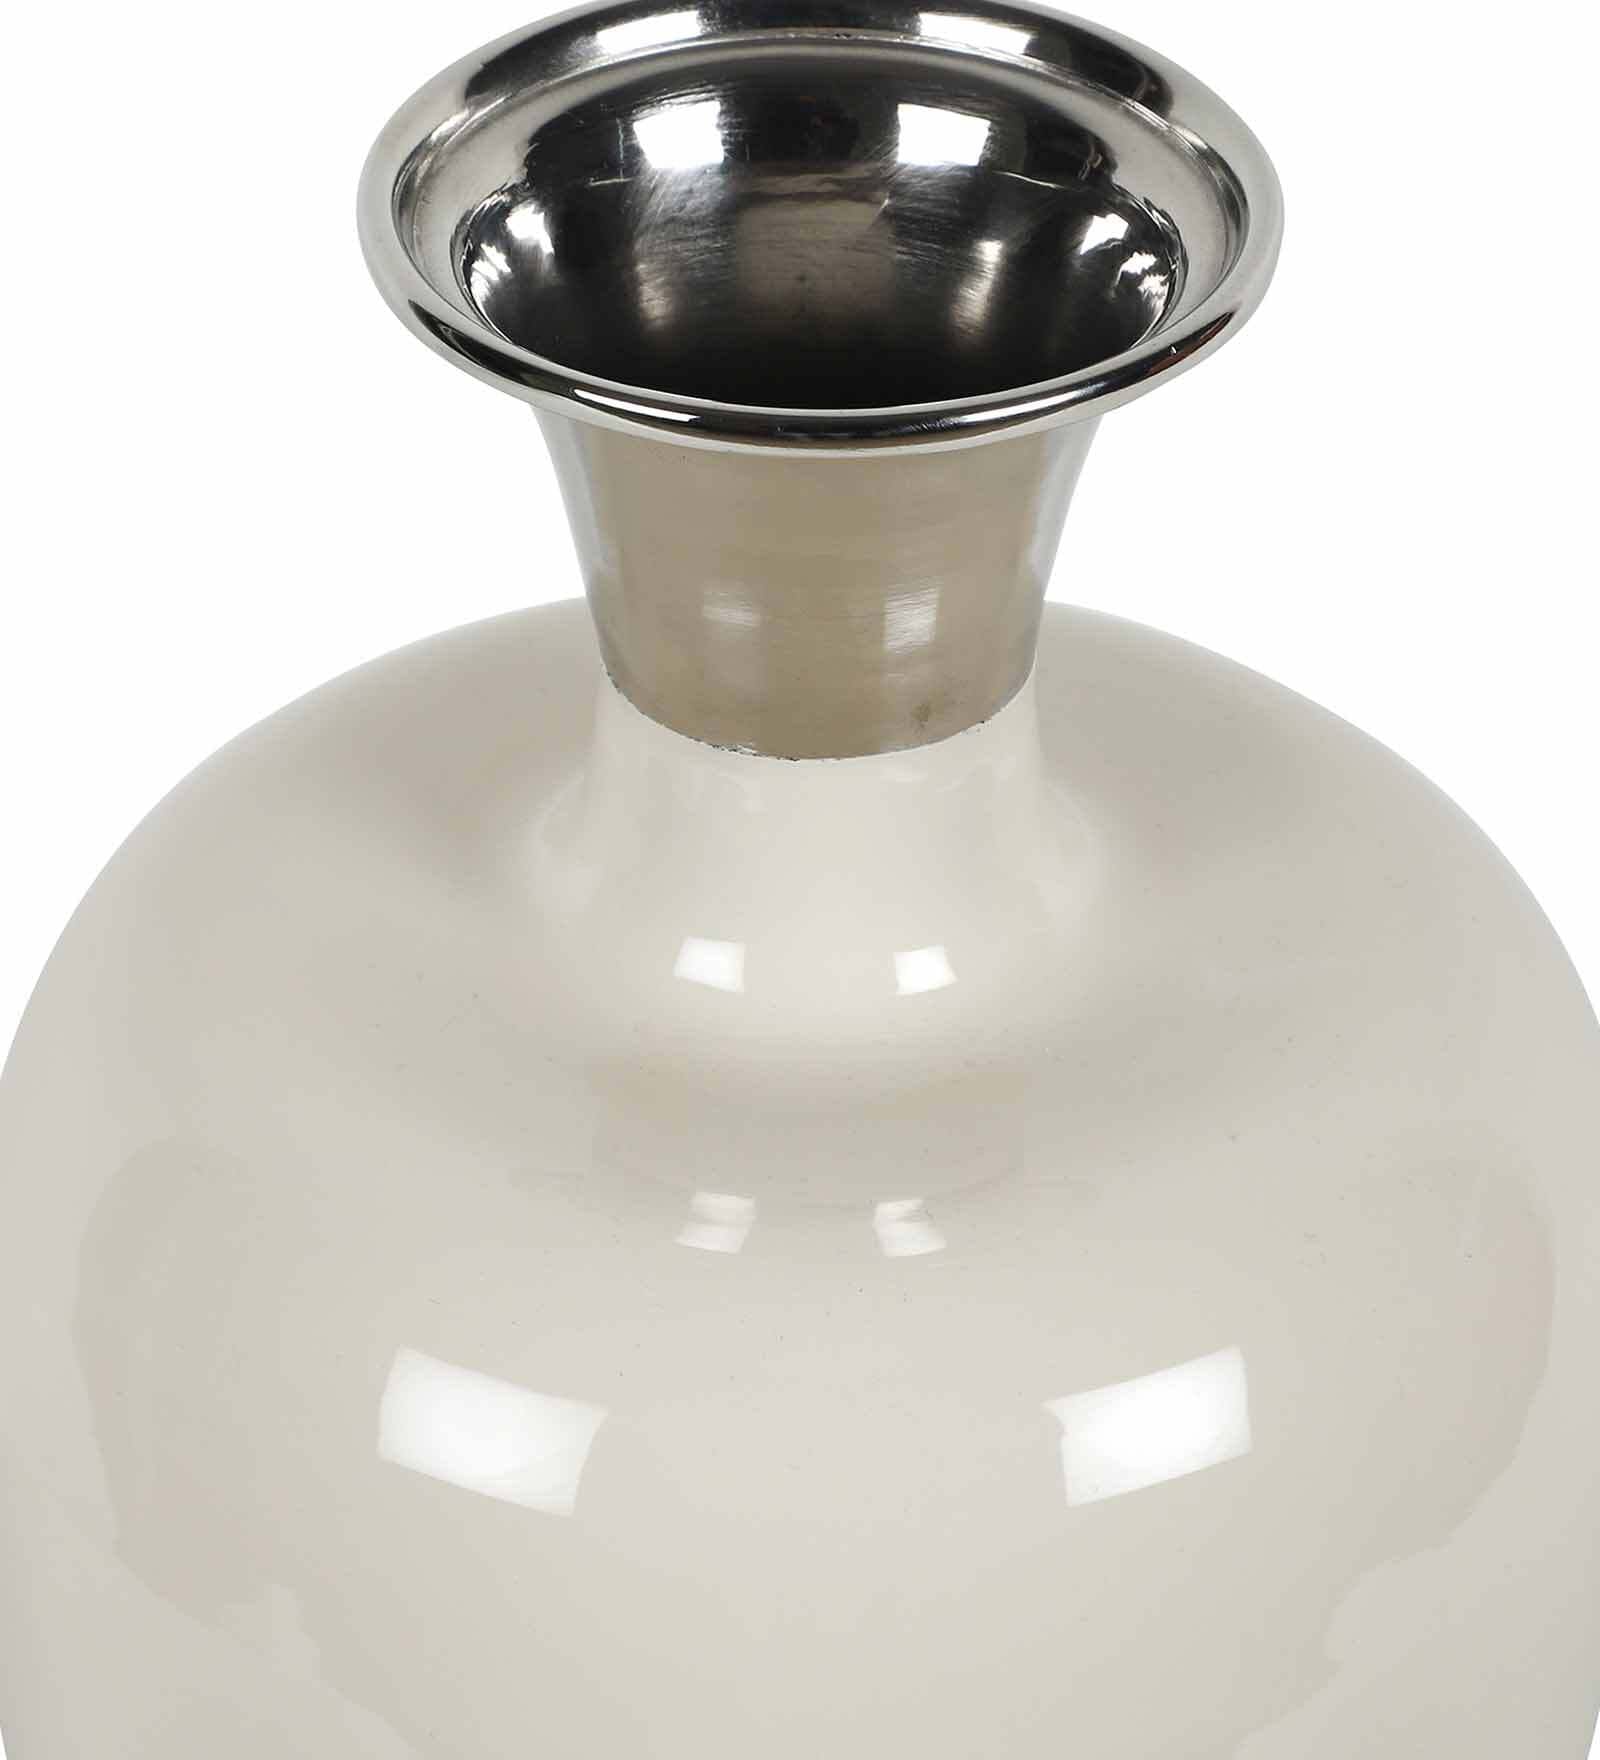 Urn Deidra Fawn White & Brass Vase Finger Painted Enamel,